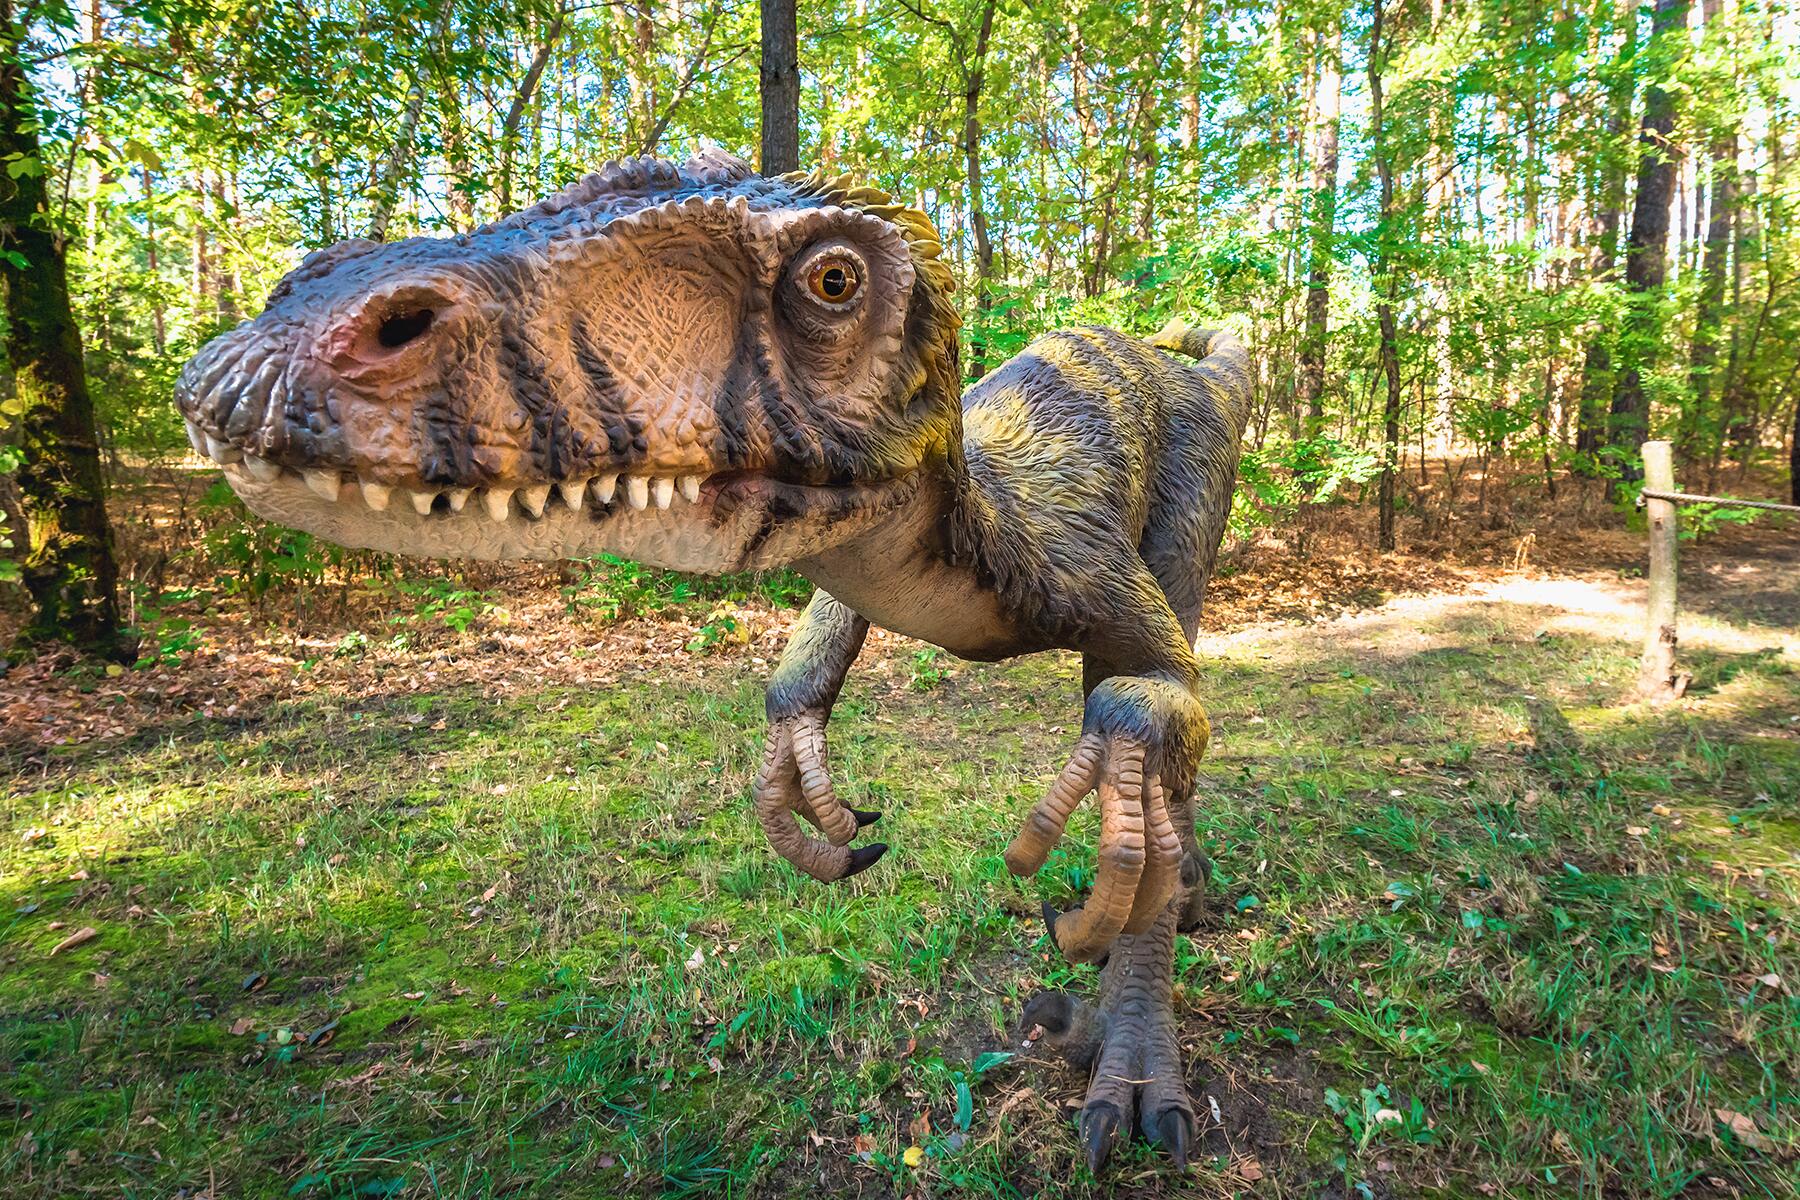 Paleoexhibit: Deinocheirus the magnificent